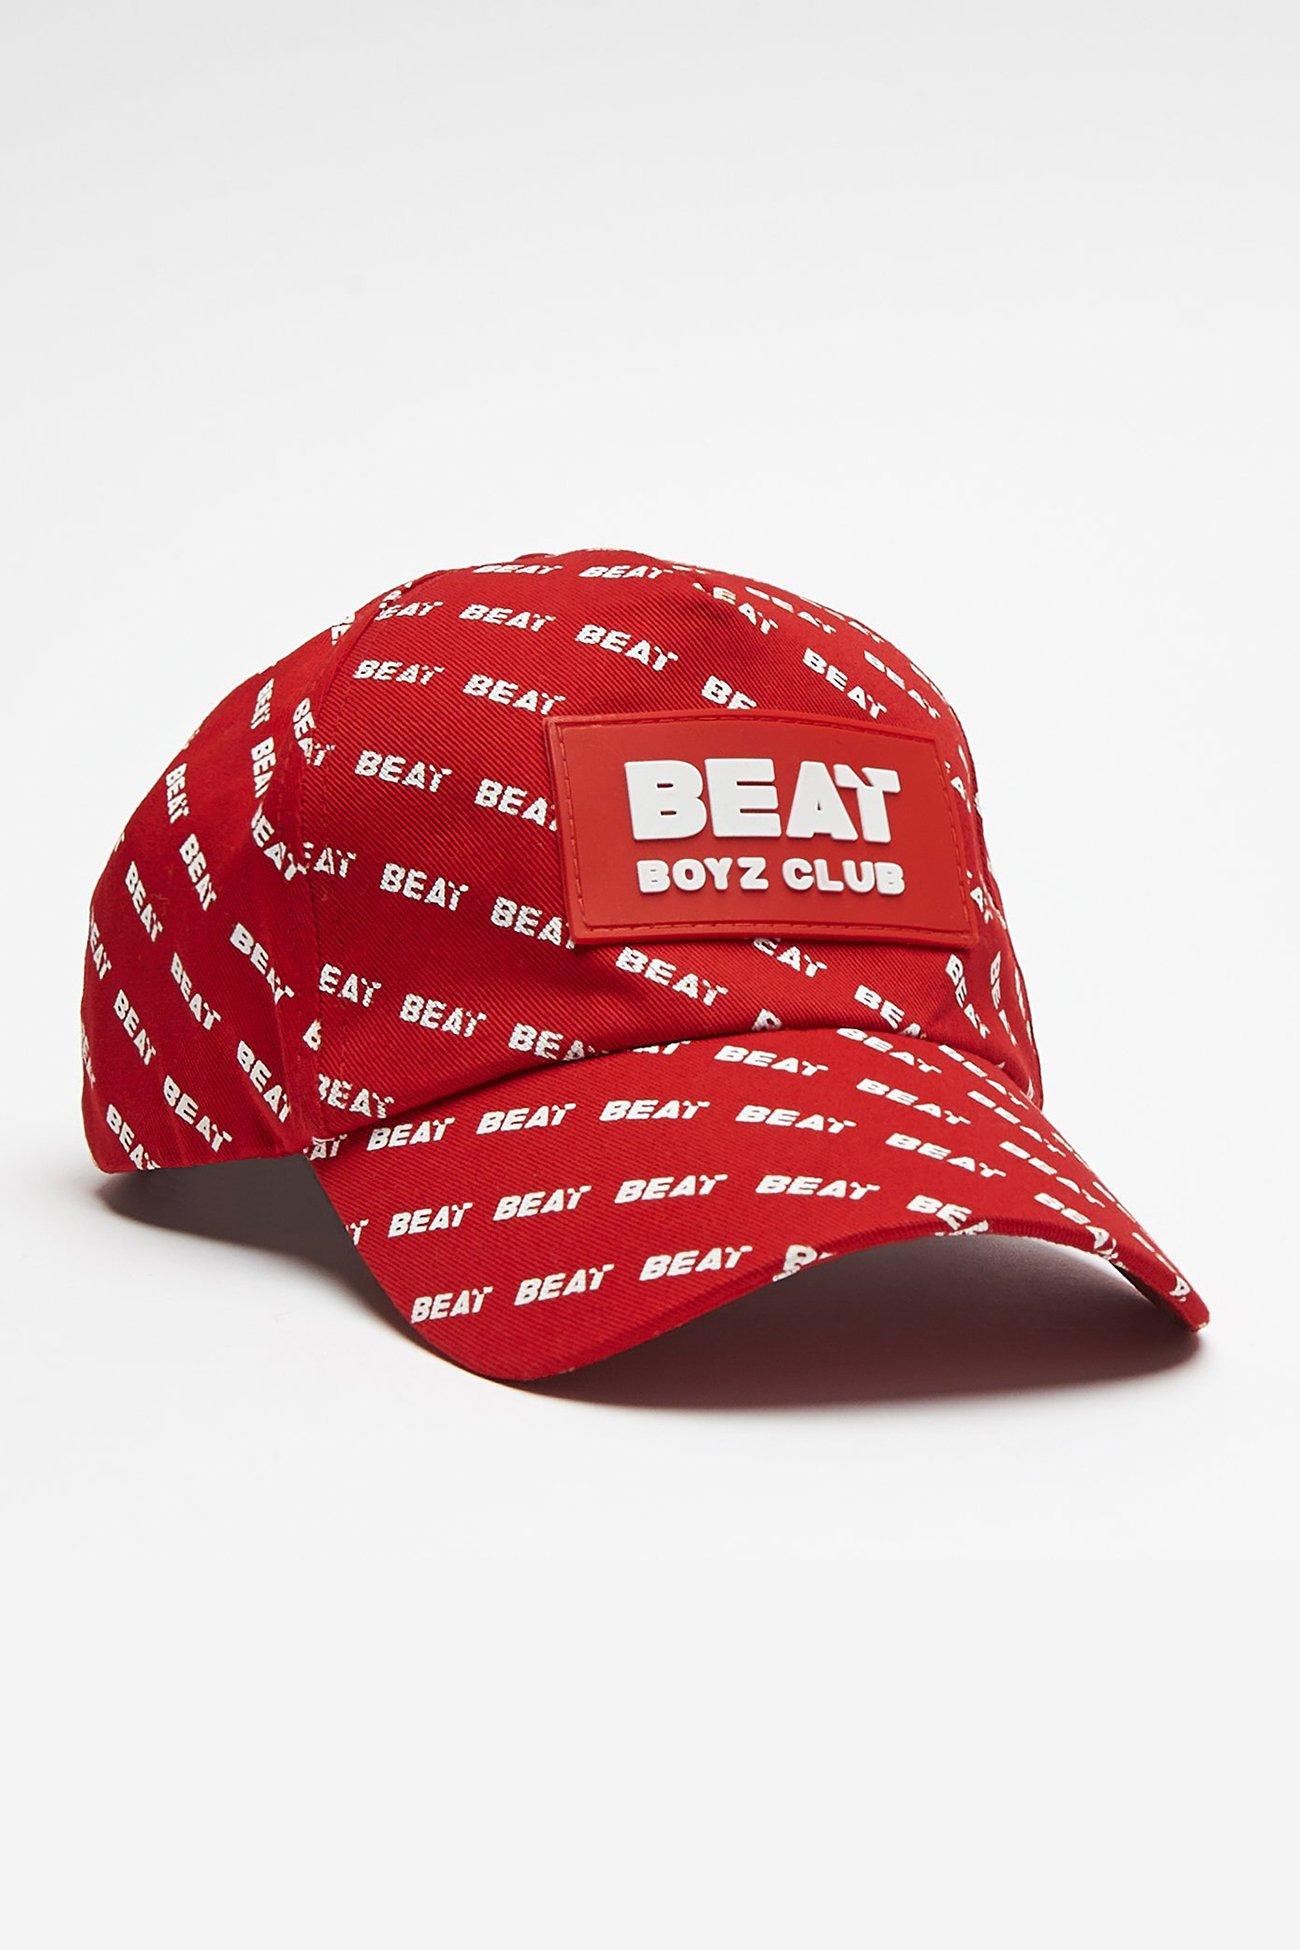 Бейсбольная кепка Heelflip Beat Boyz Club, красный жилет с камуфляжной вставкой wheelnut beat boyz club хаки